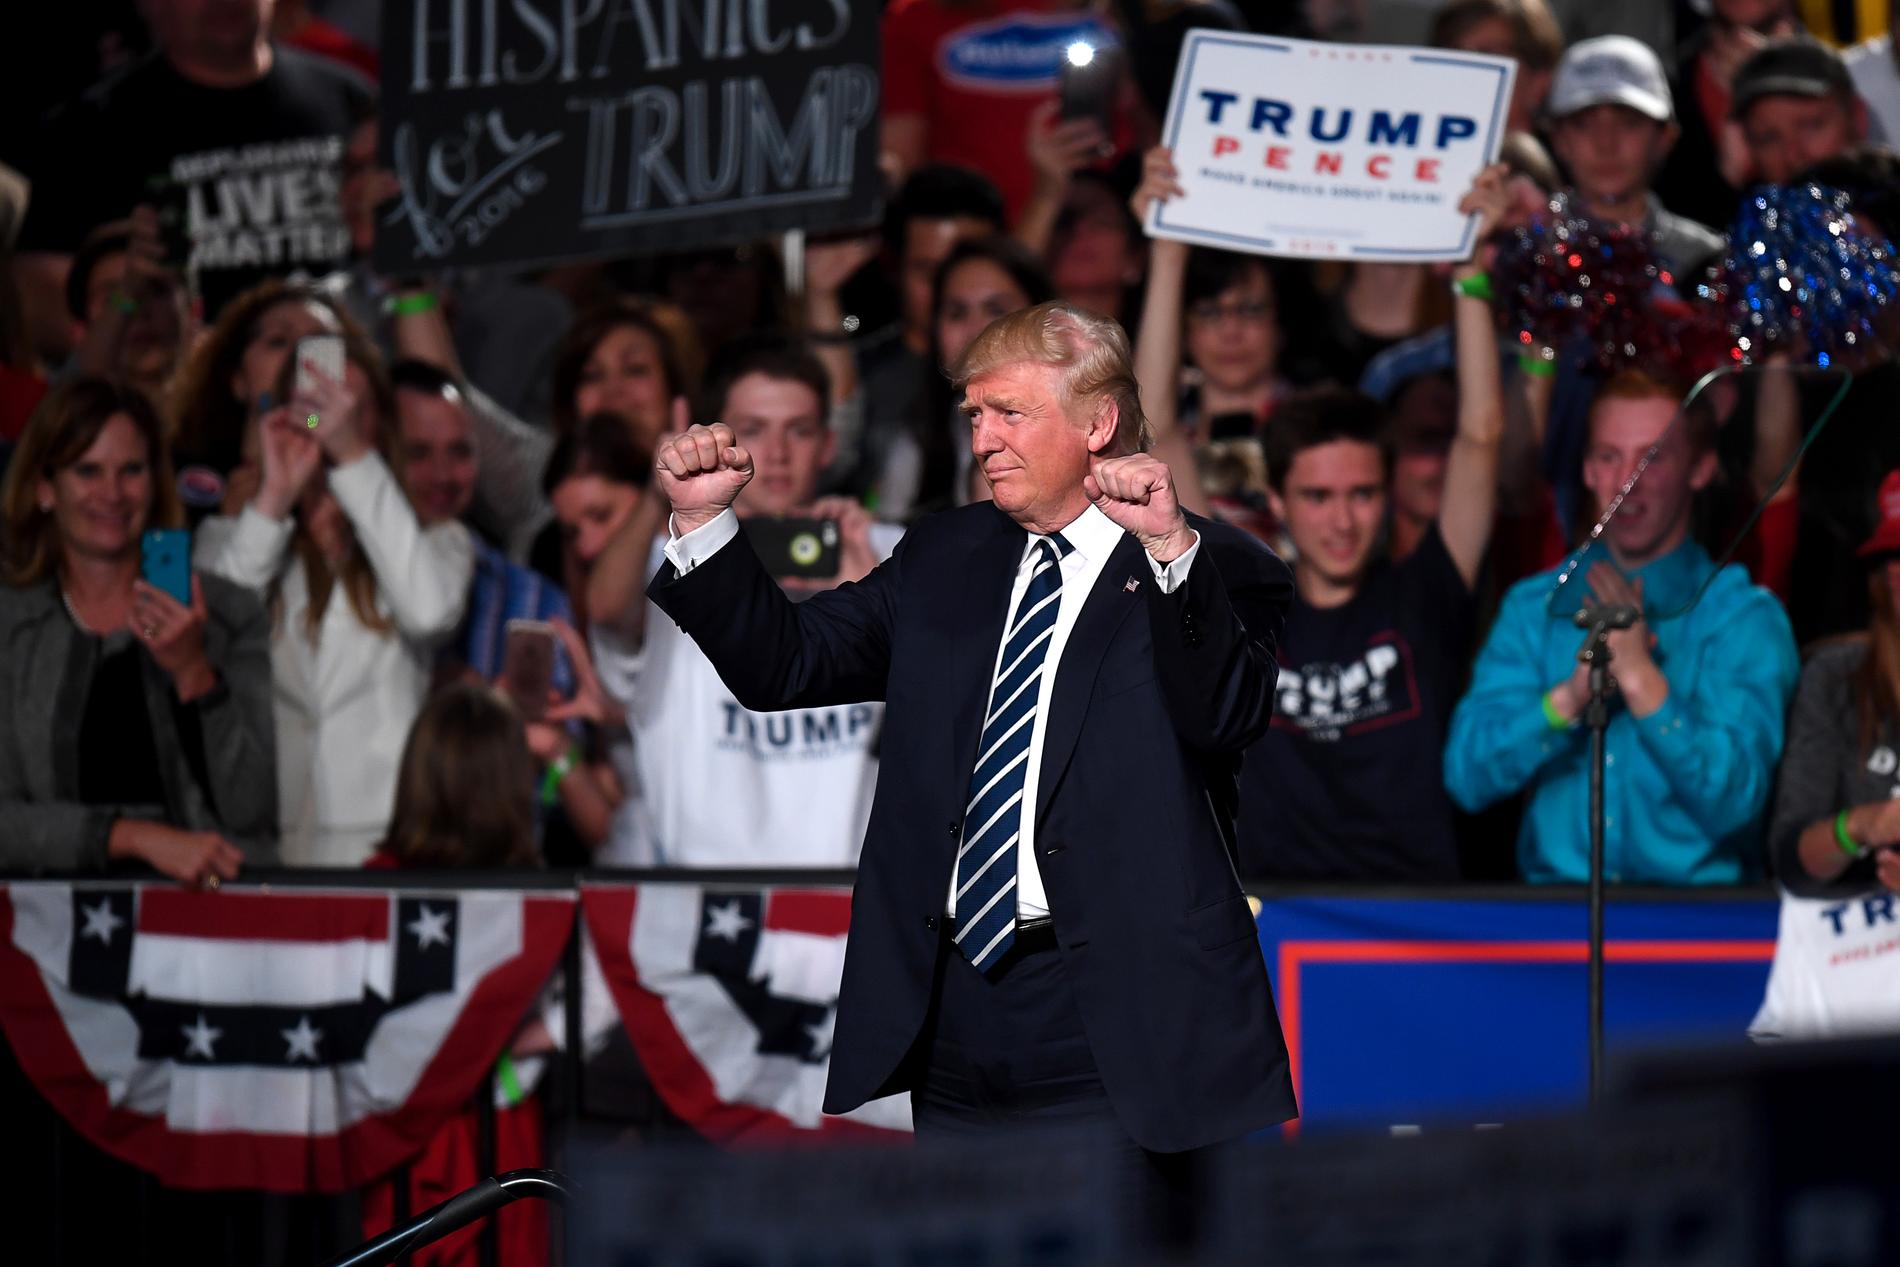 SLUTSPURTEN Donald Trump höll sitt sista tal under valkampanjen i Grand Rapids i Michigan.